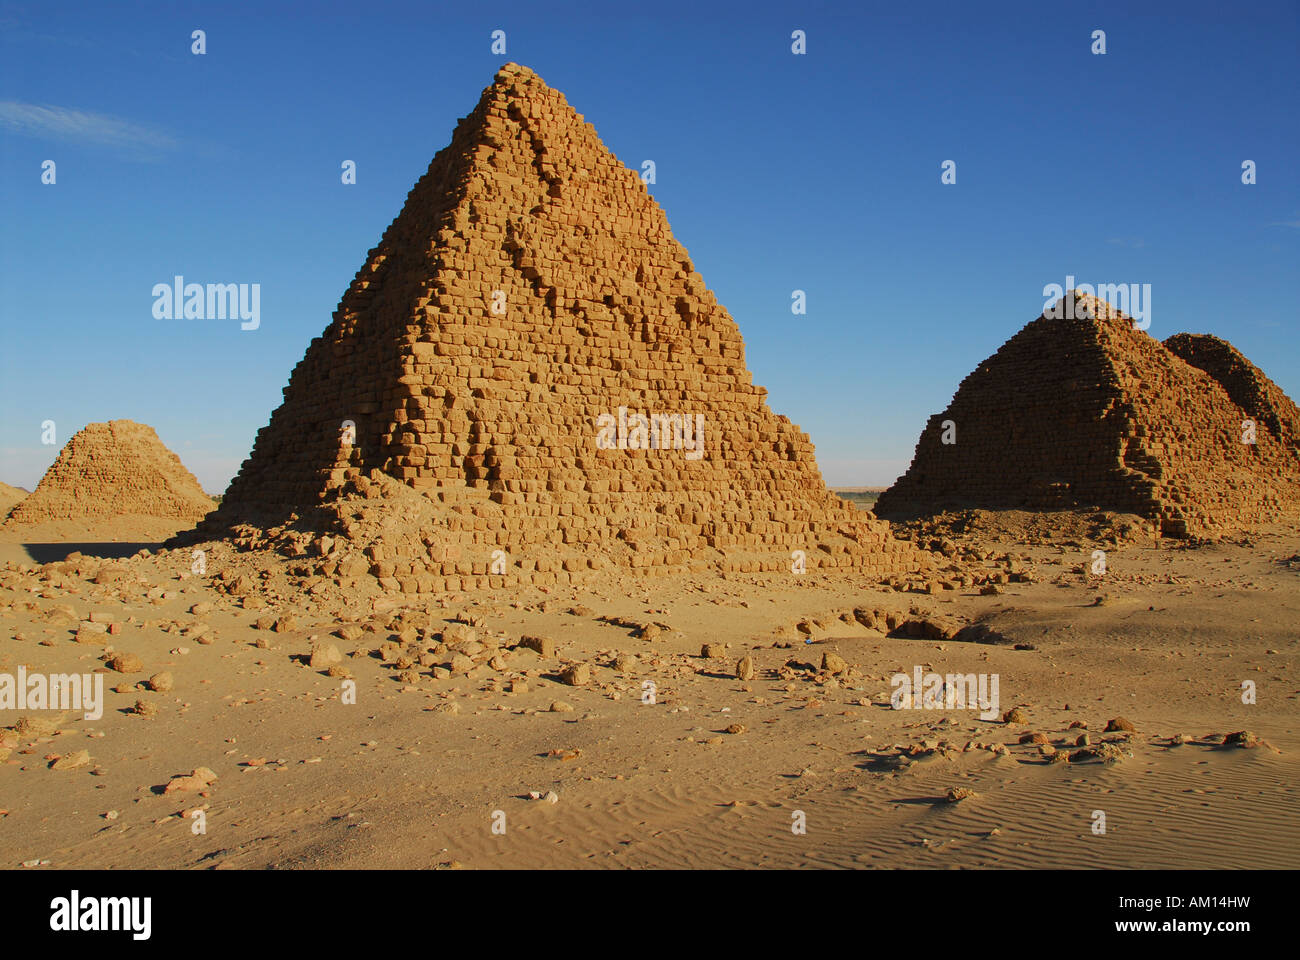 Pyramids, Nuri, Sudan Stock Photo